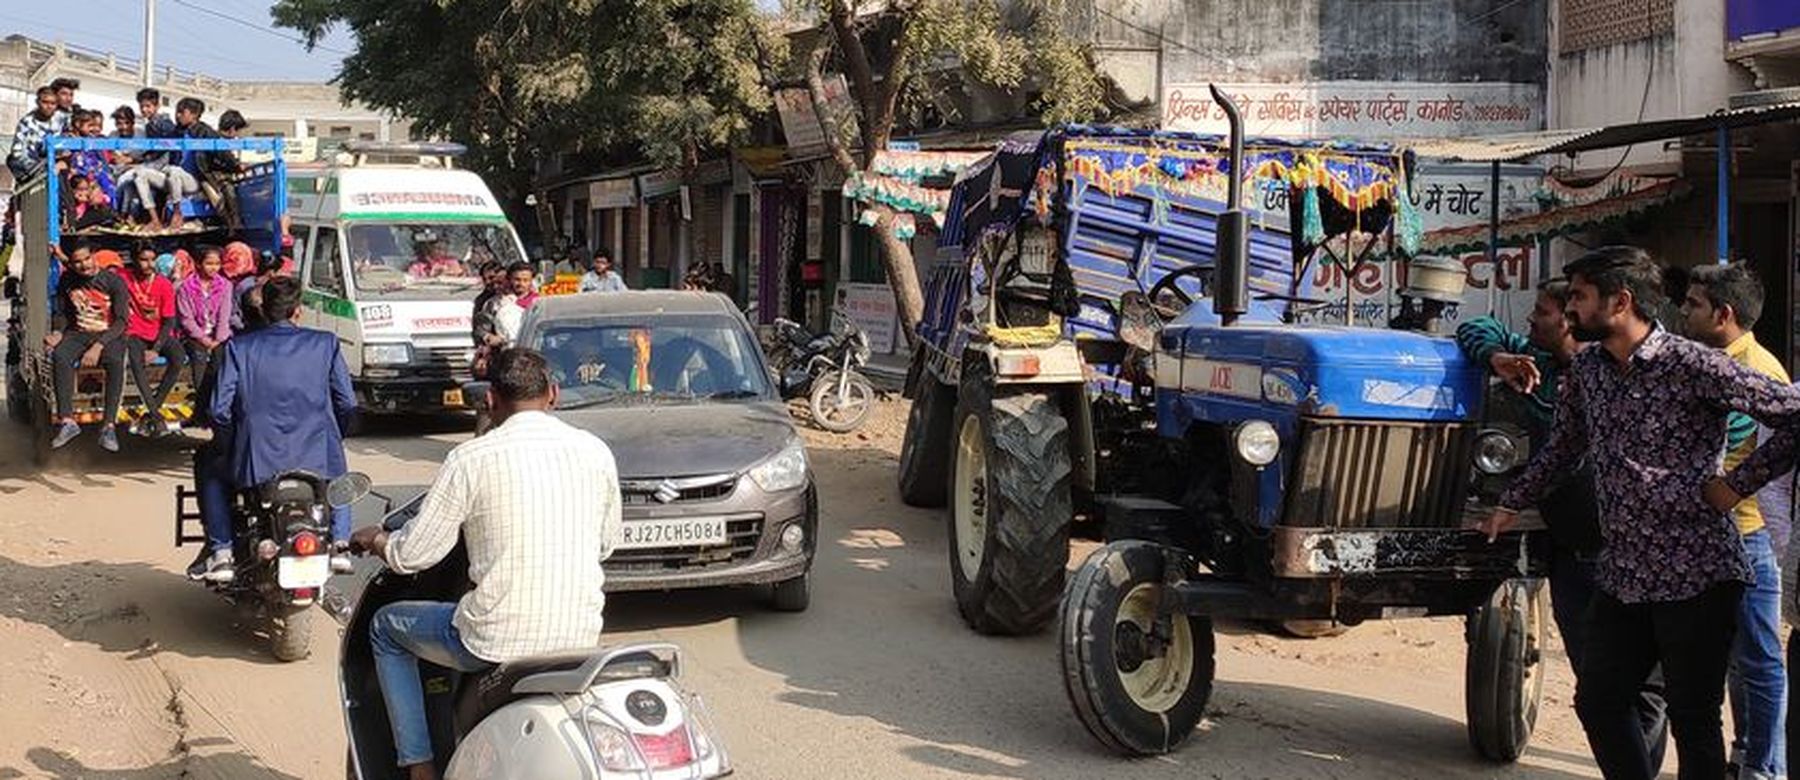 उदयपुर का एक ऐसा नगर, जहां ठेकेदारों की मनमानी से जनता हो रही है गुमराह